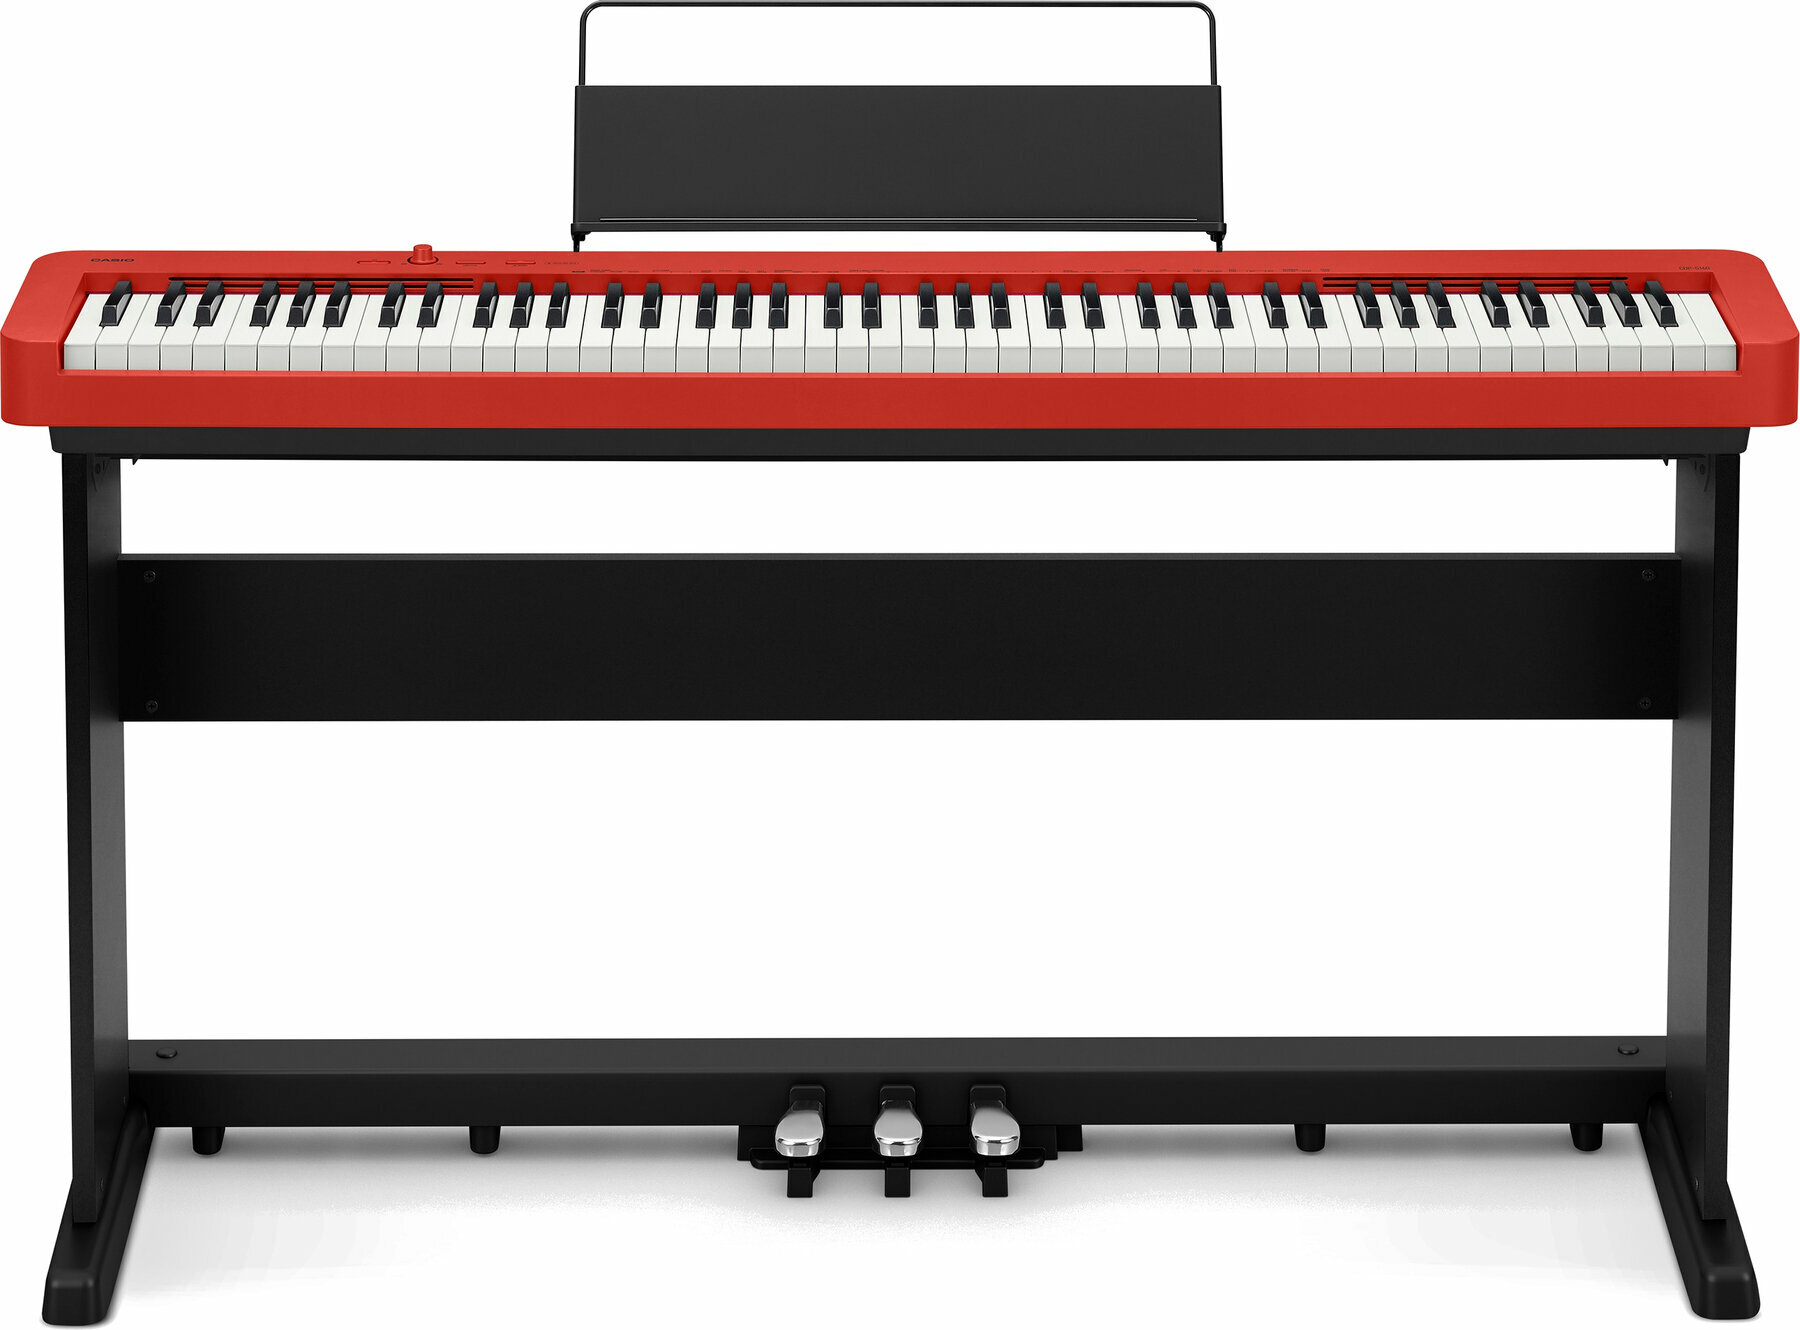 Piano de escenario digital Casio CDP-S160 RD Piano de escenario digital